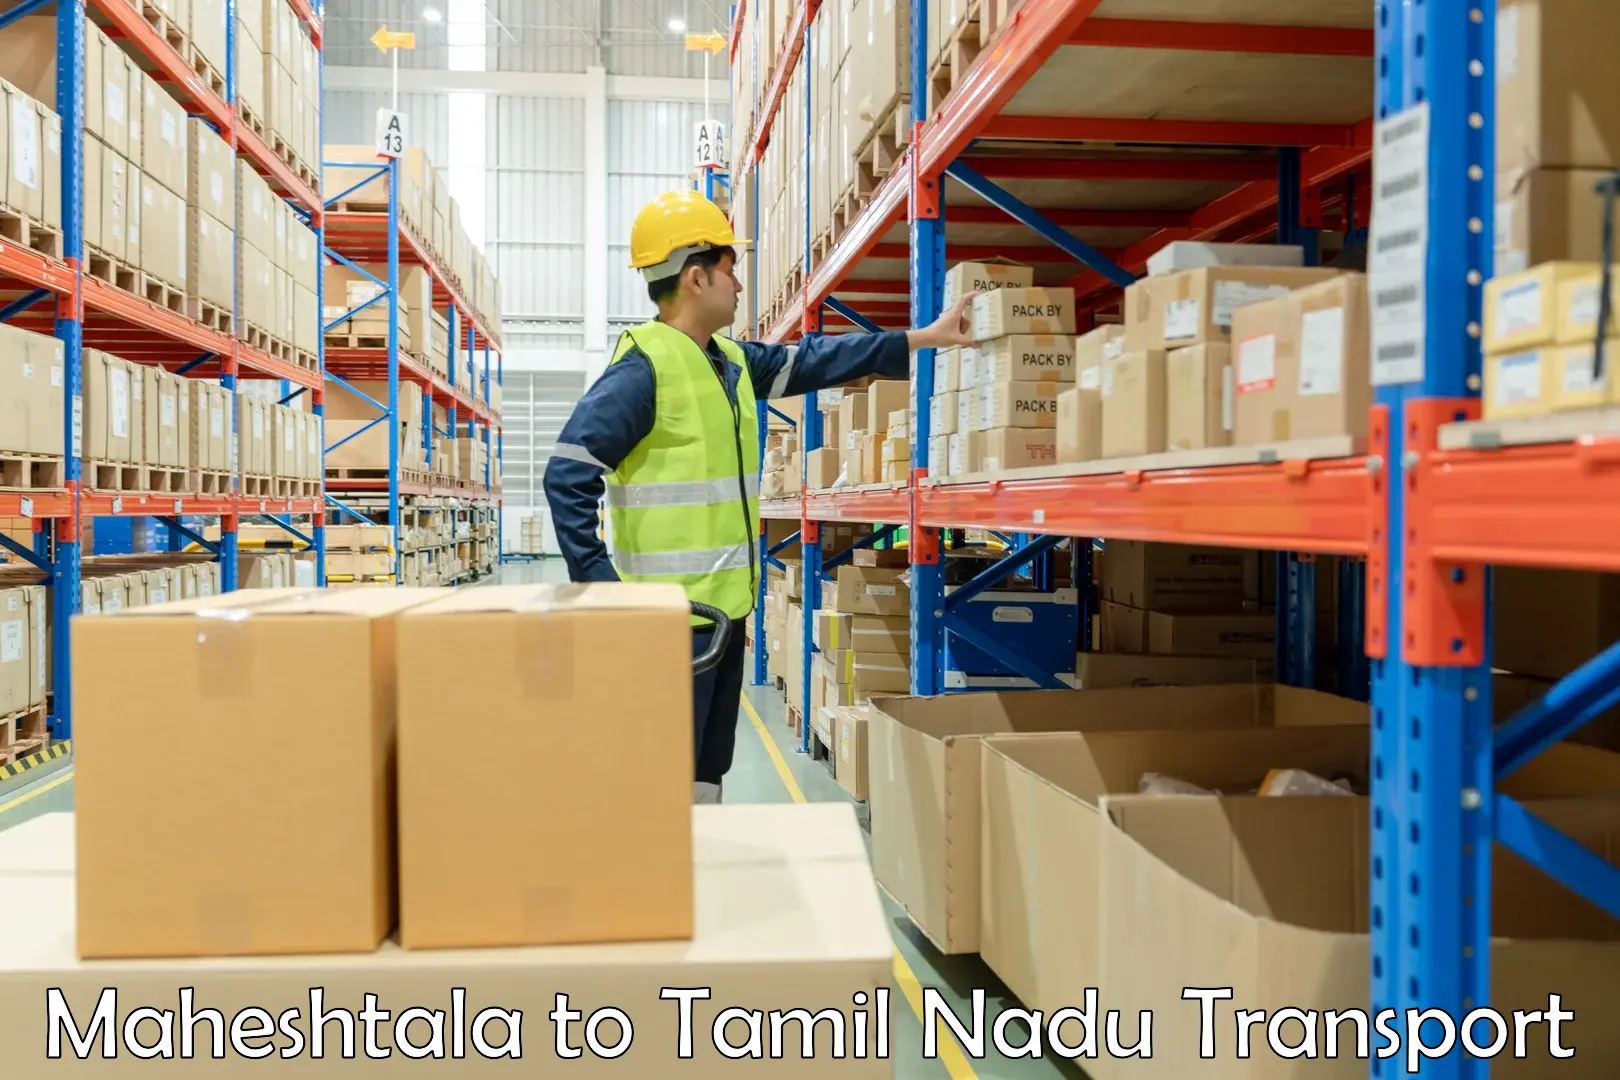 Container transportation services Maheshtala to Chennai